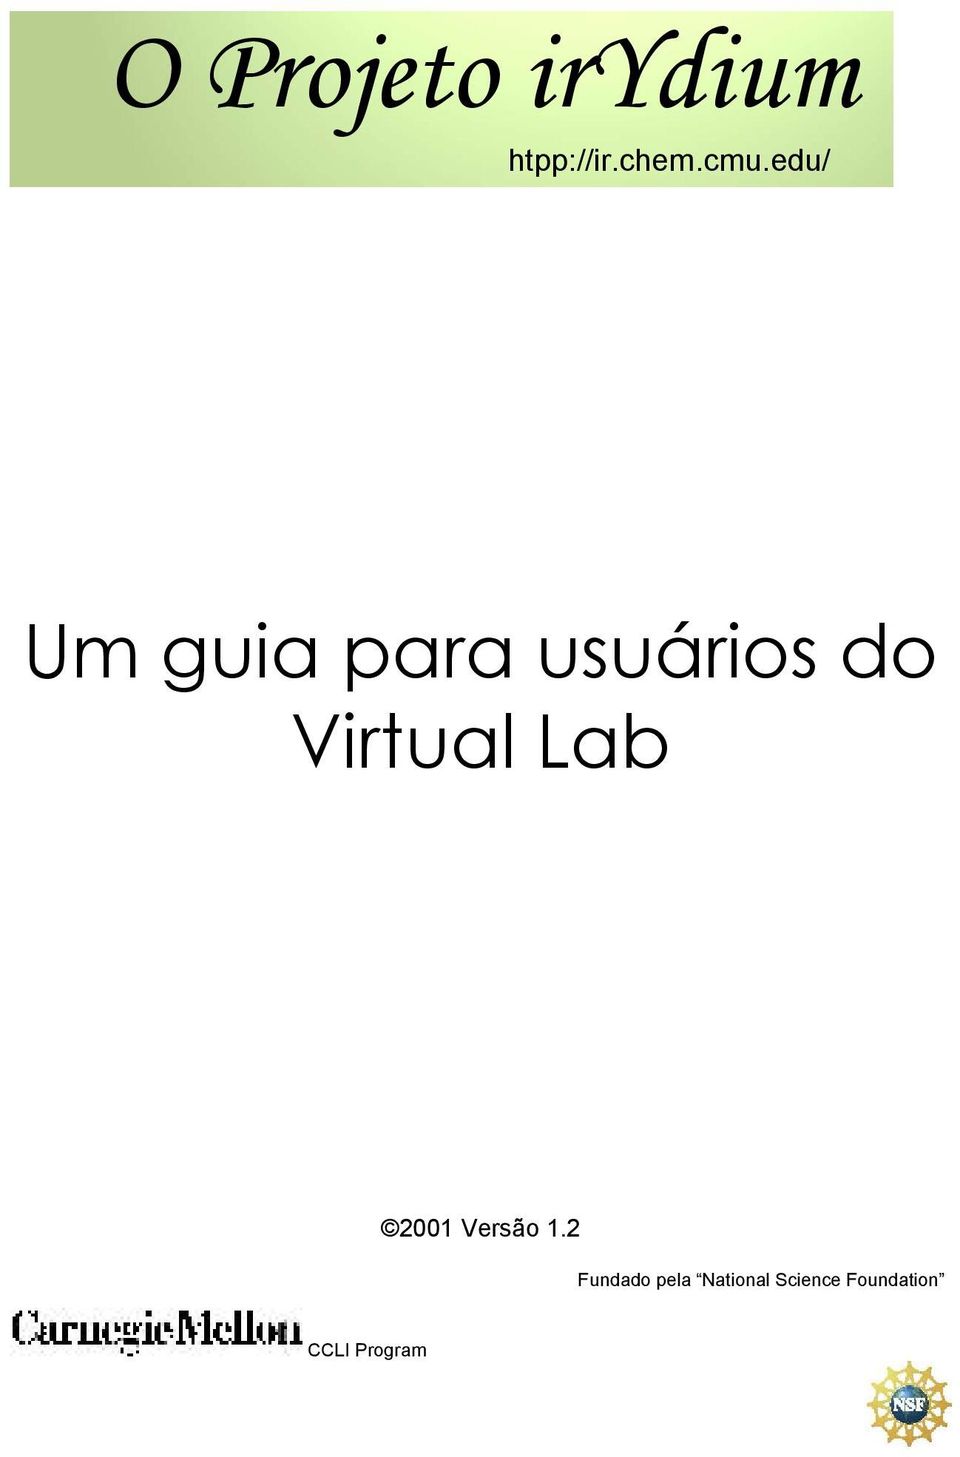 Virtual Lab 2001 Versão 1.